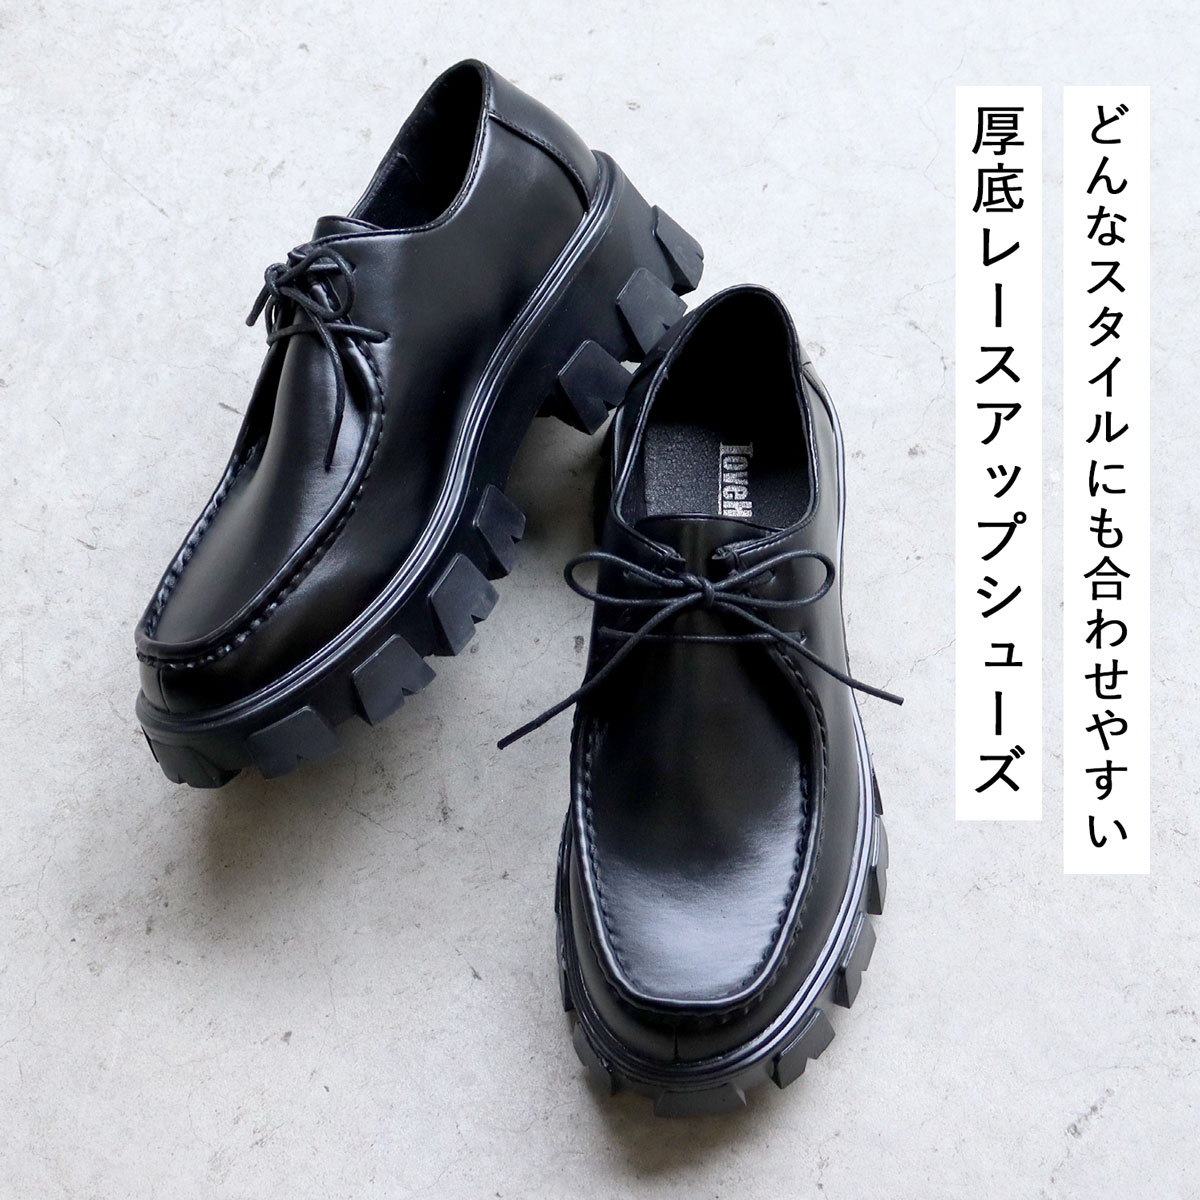 革靴 メンズ 黒 厚底 5.5cm チロリアン モカシン カジュアル 25-27cm 